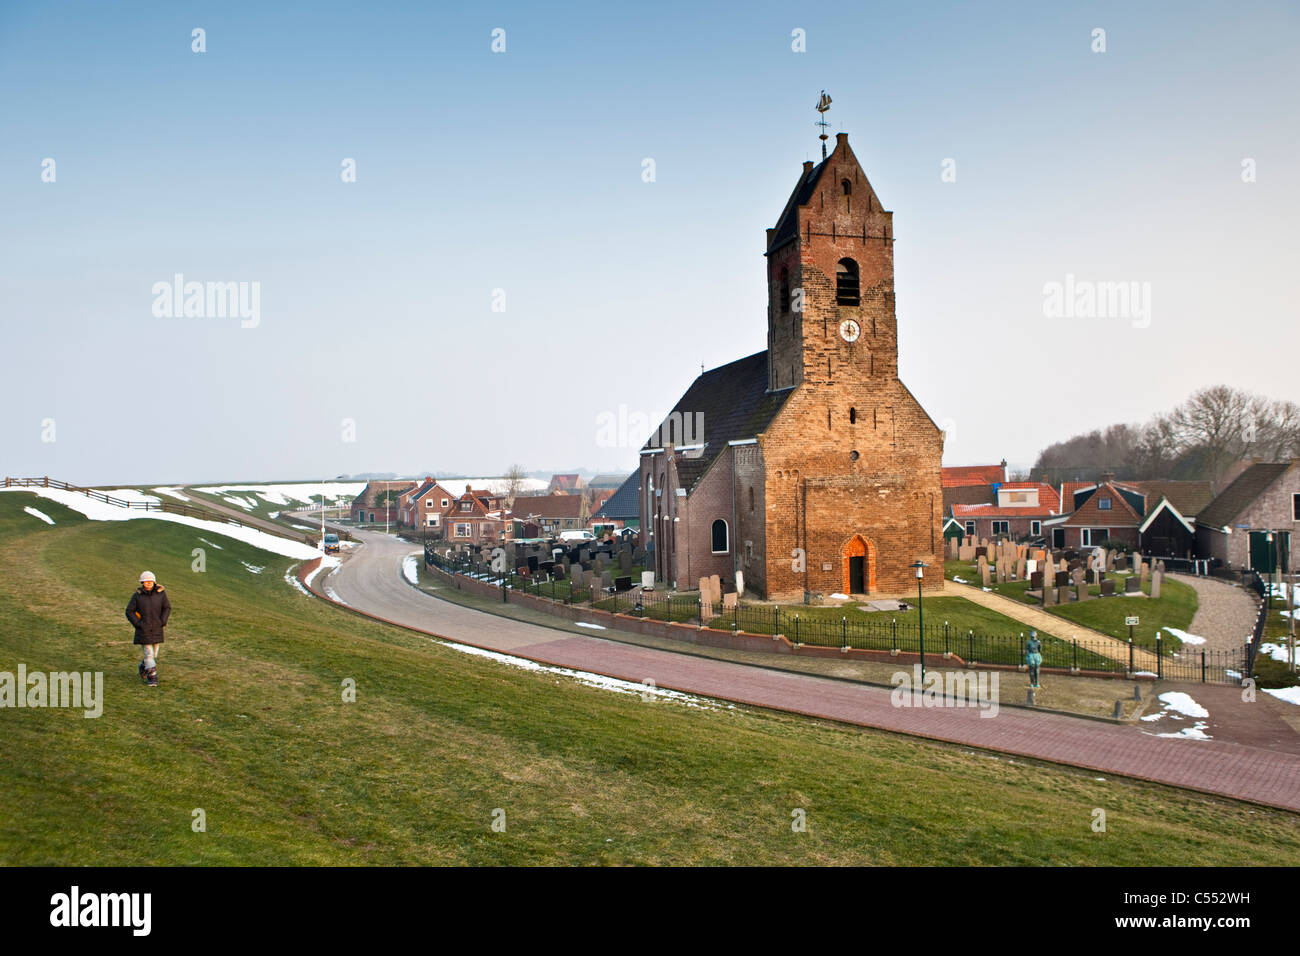 Les Pays-Bas, Wierum, Église près de digue. L'hiver. Banque D'Images